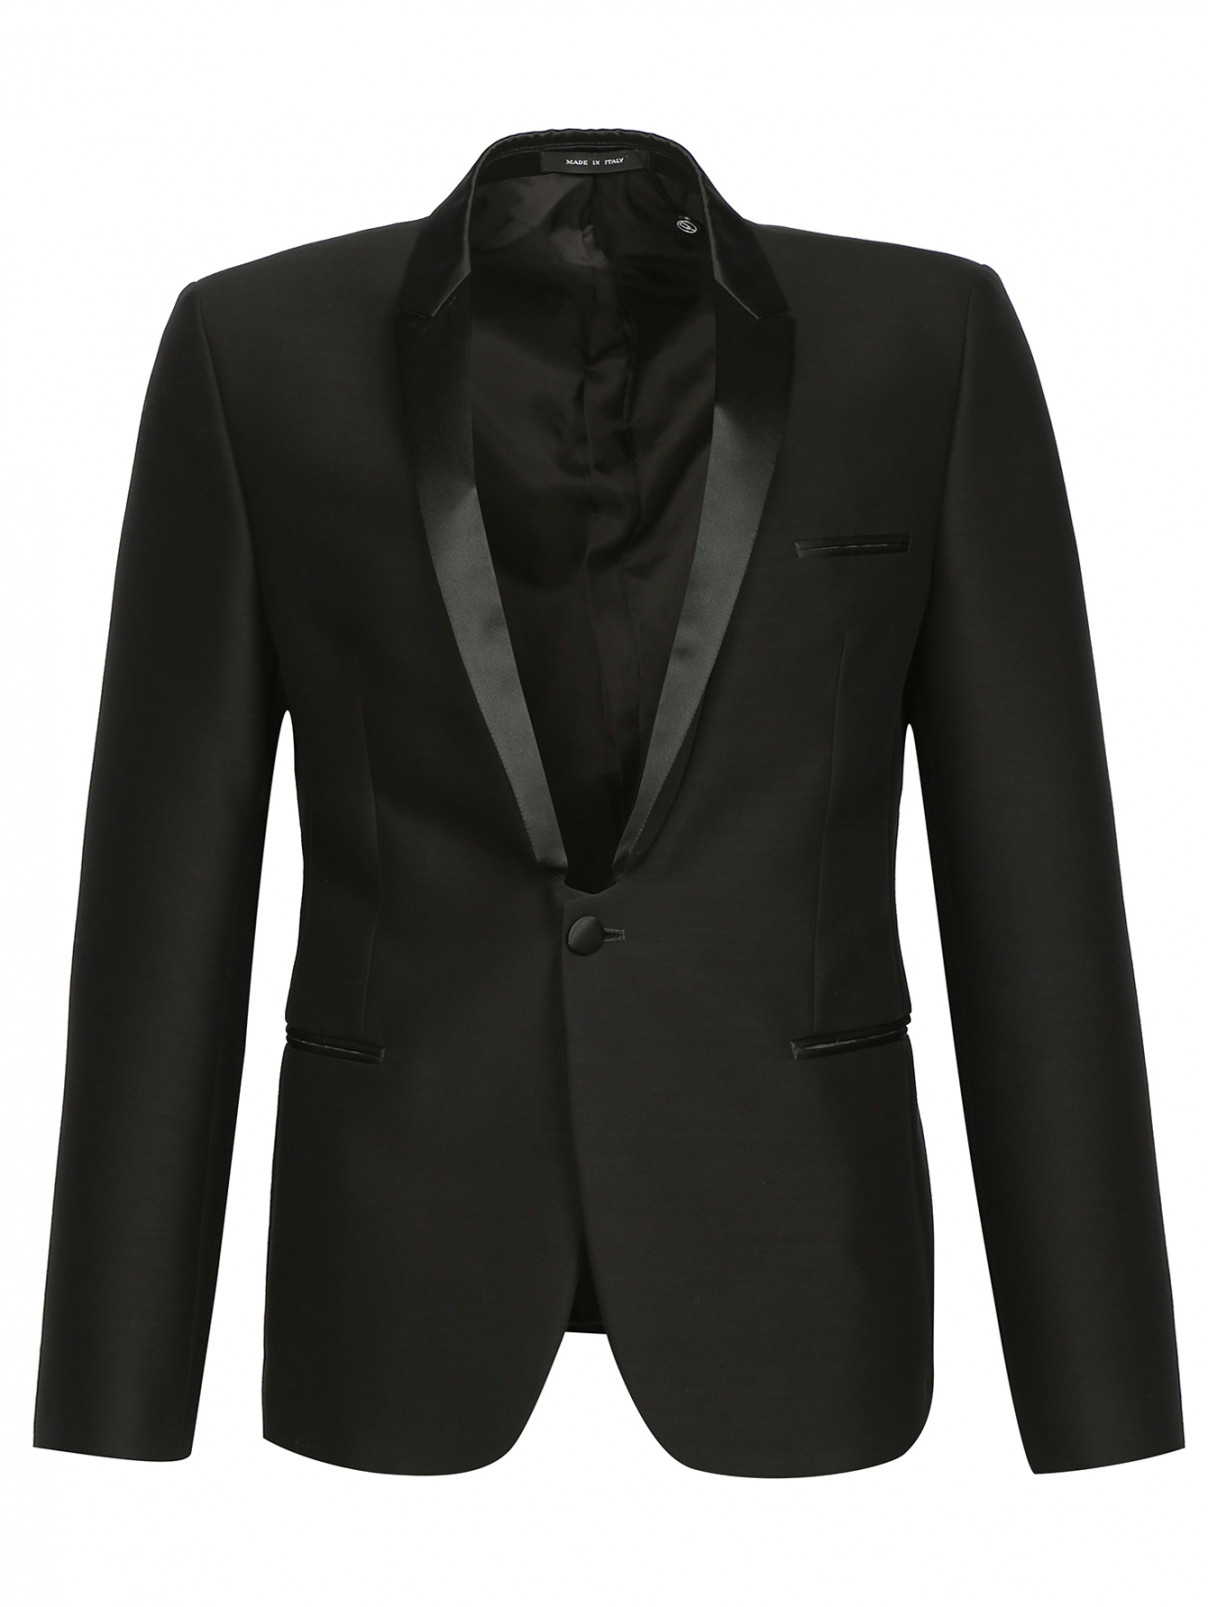 Однобортный пиджак из смешанной шерсти с атласными вставками Emporio Armani  –  Общий вид  – Цвет:  Черный